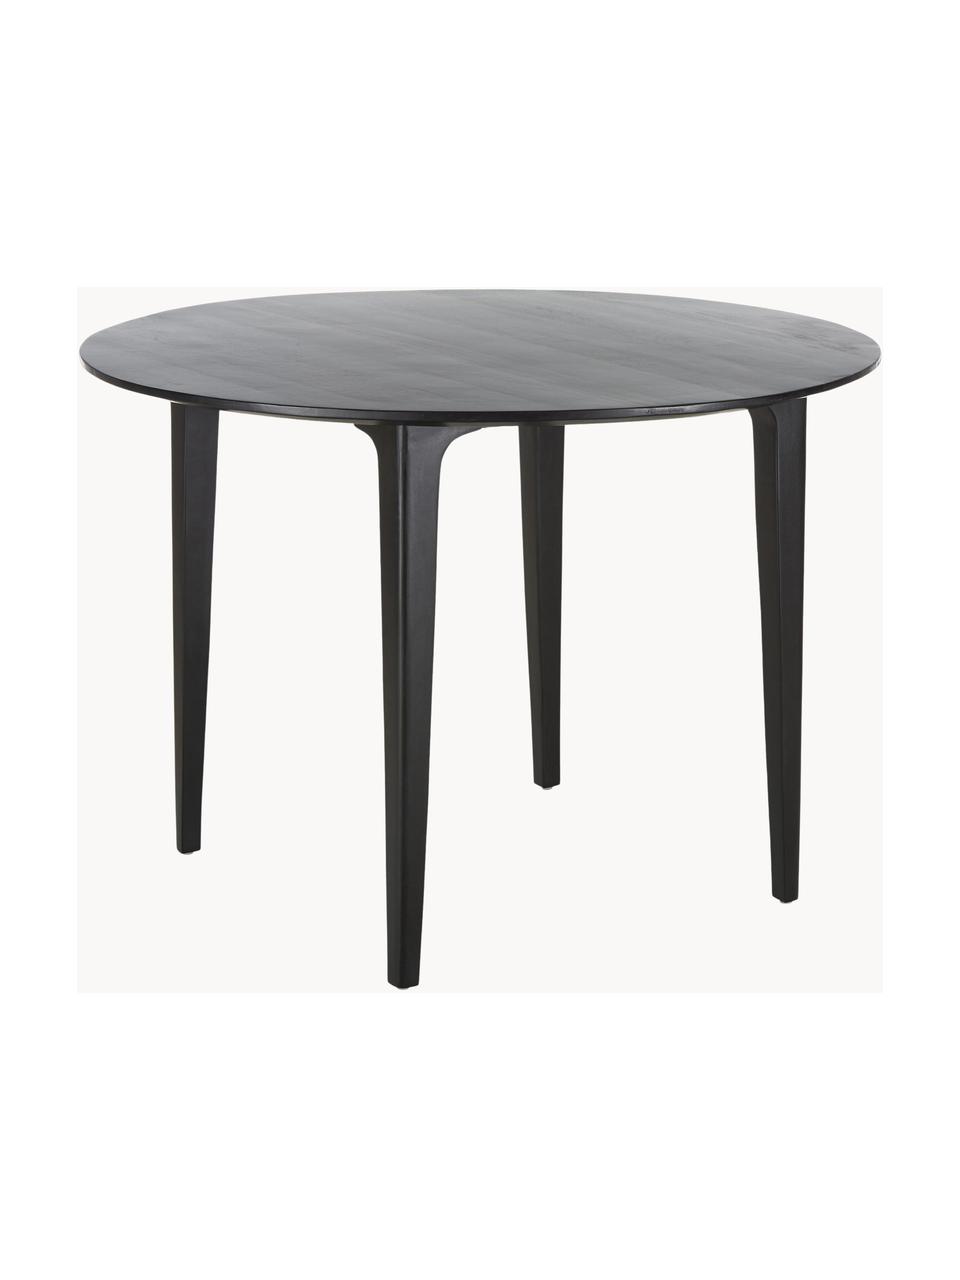 Okrúhly jedálenský stôl z mangového dreva Archie, Ø 110 cm, Masívne mangové drevo, lakované

Tento výrobok je vyrobený z dreva s certifikátom FSC®, ktoré pochádza z udržateľných zdrojov, Mangové drevo, čierne lakované, Ø 110 x V 75 cm